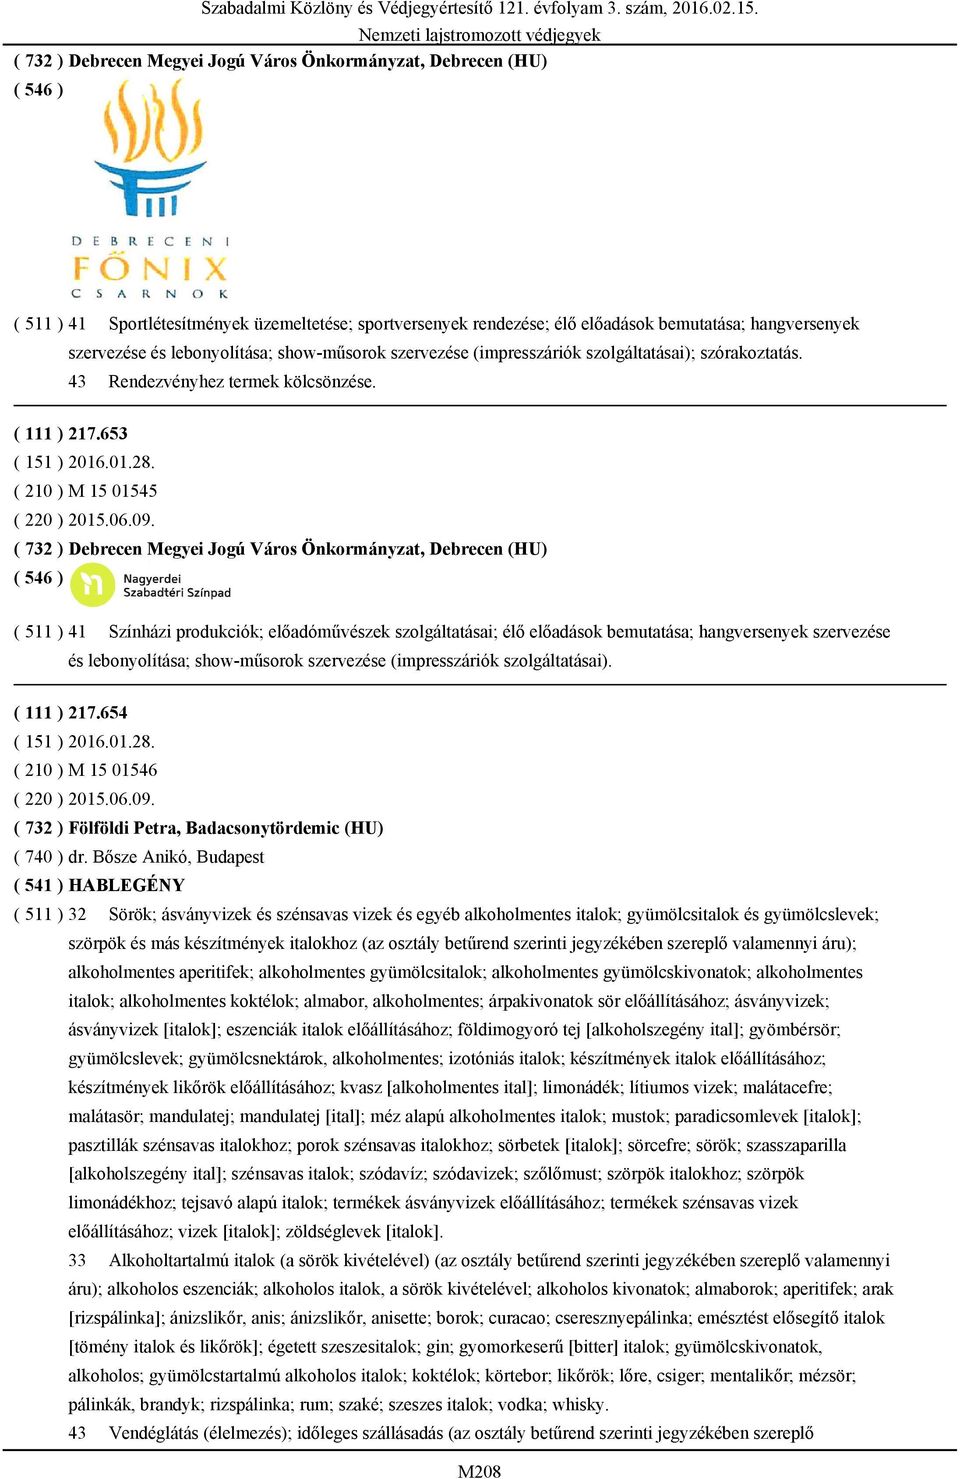 ( 732 ) Debrecen Megyei Jogú Város Önkormányzat, Debrecen (HU) ( 511 ) 41 Színházi produkciók; előadóművészek szolgáltatásai; élő előadások bemutatása; hangversenyek szervezése és lebonyolítása;